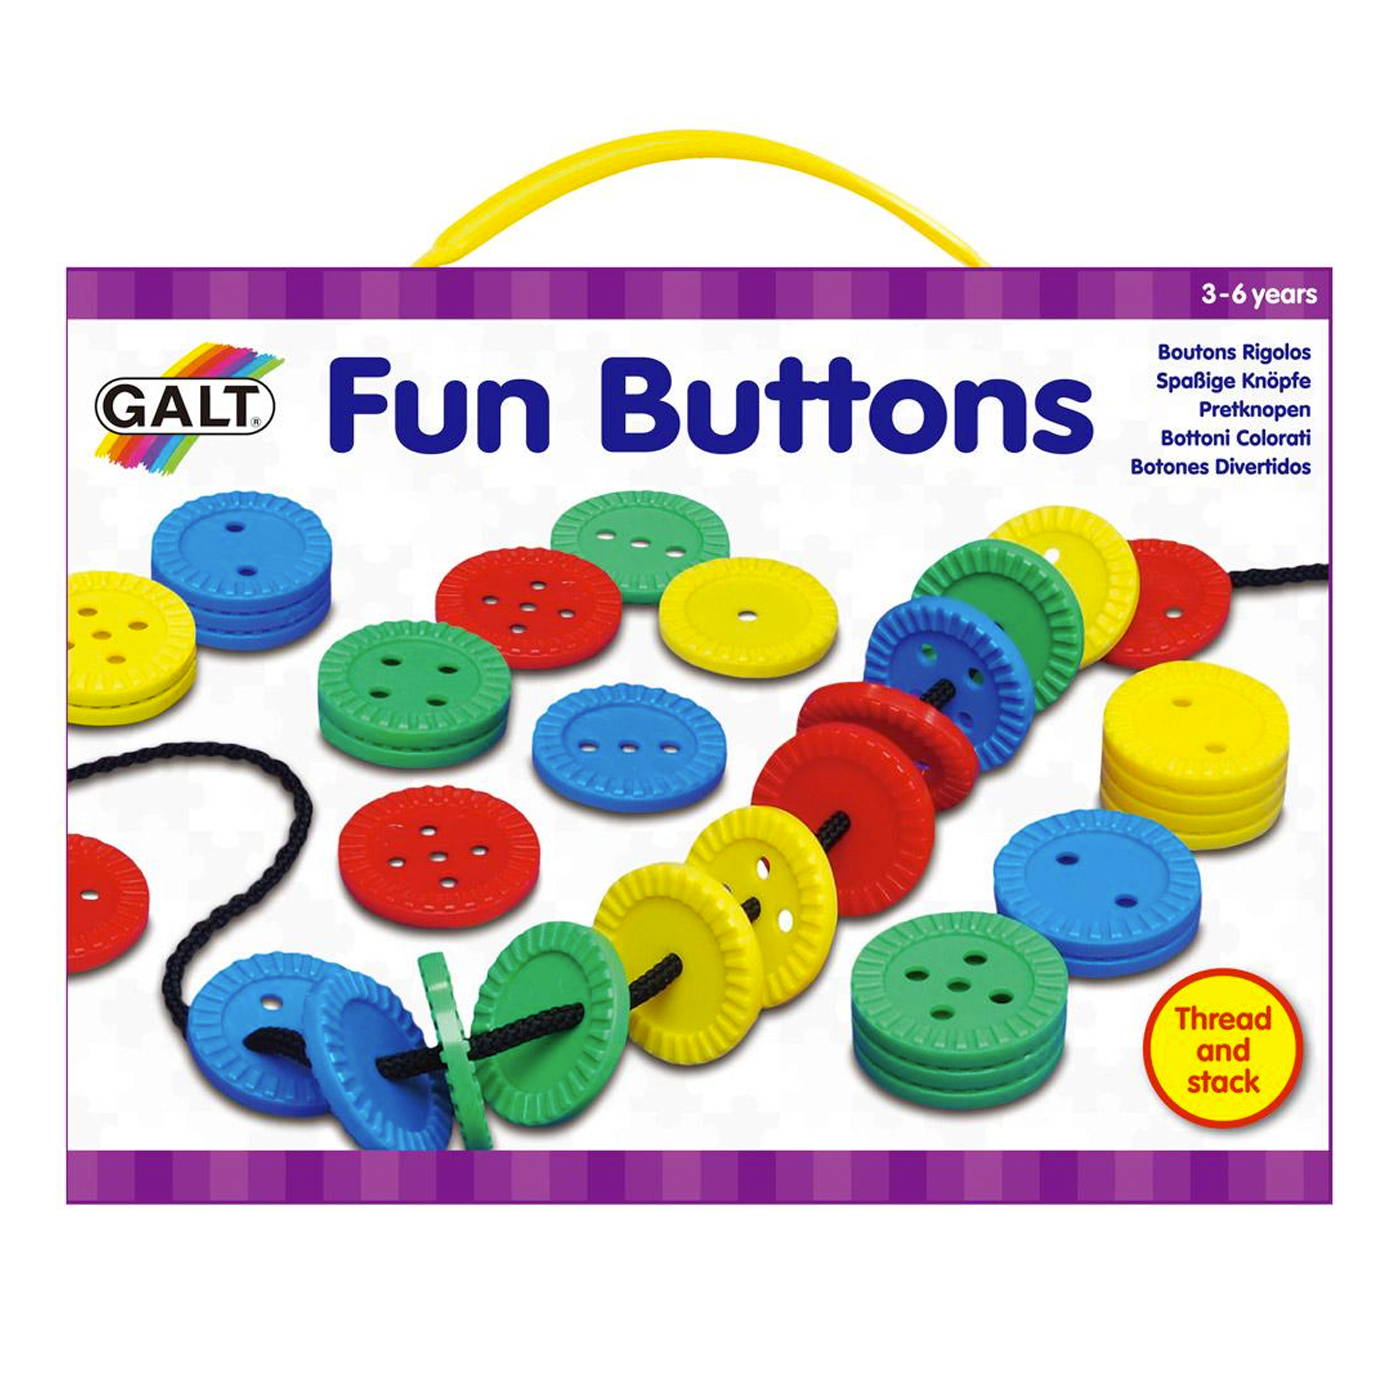  Galt Fun Buttons